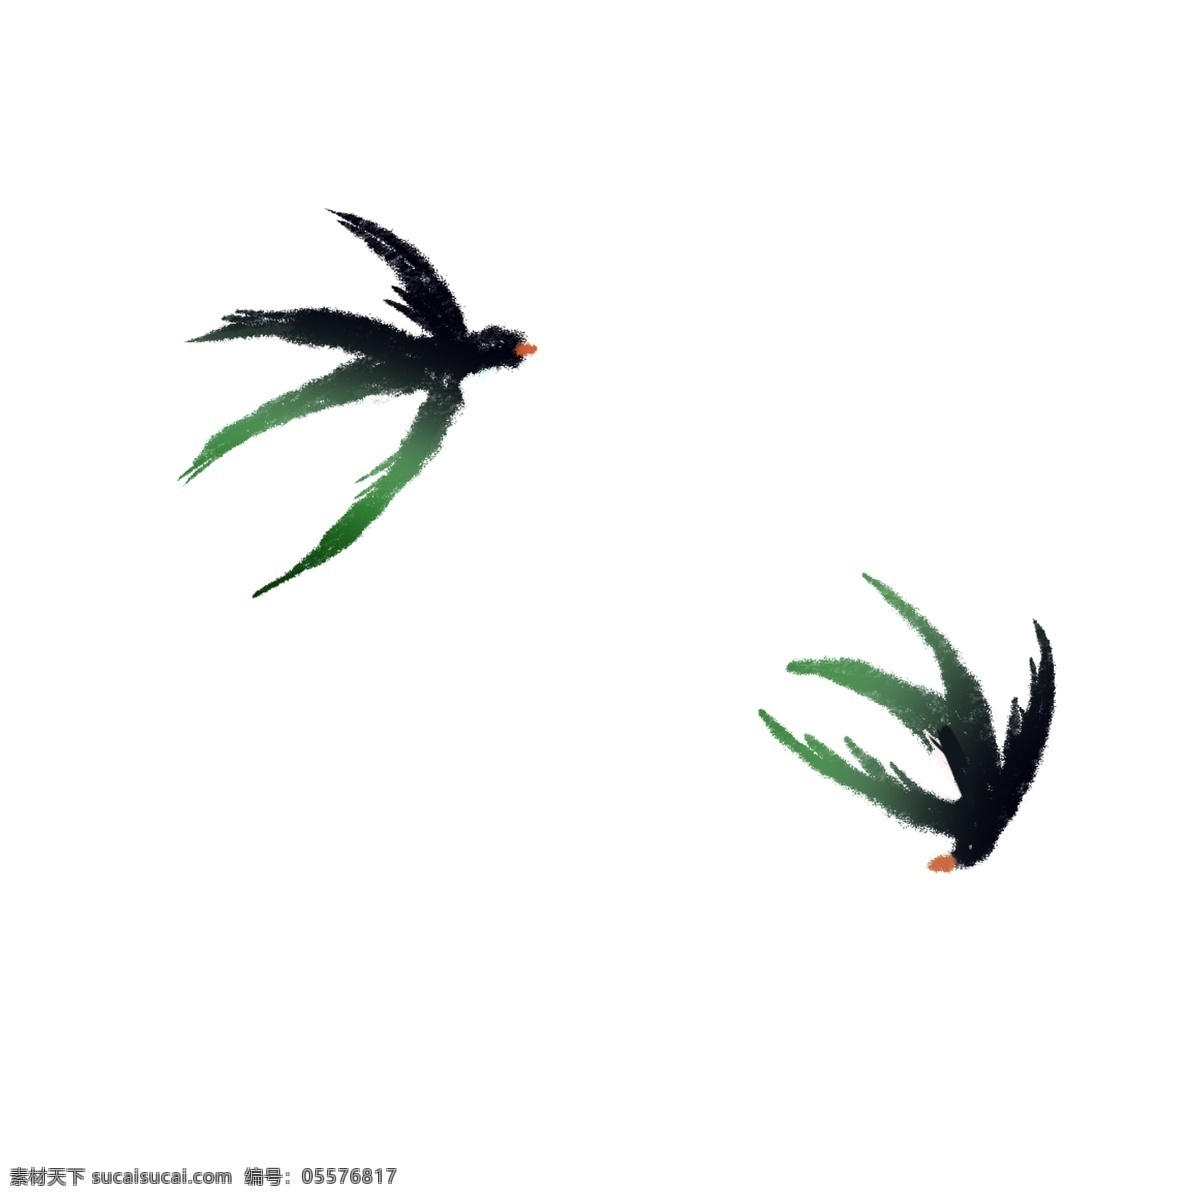 卡通 黑色 小燕子 免 抠 图 燕子 飞翔的燕子 动漫人物 卡通动漫 小动物 小鸟 黑色的动物 免抠图